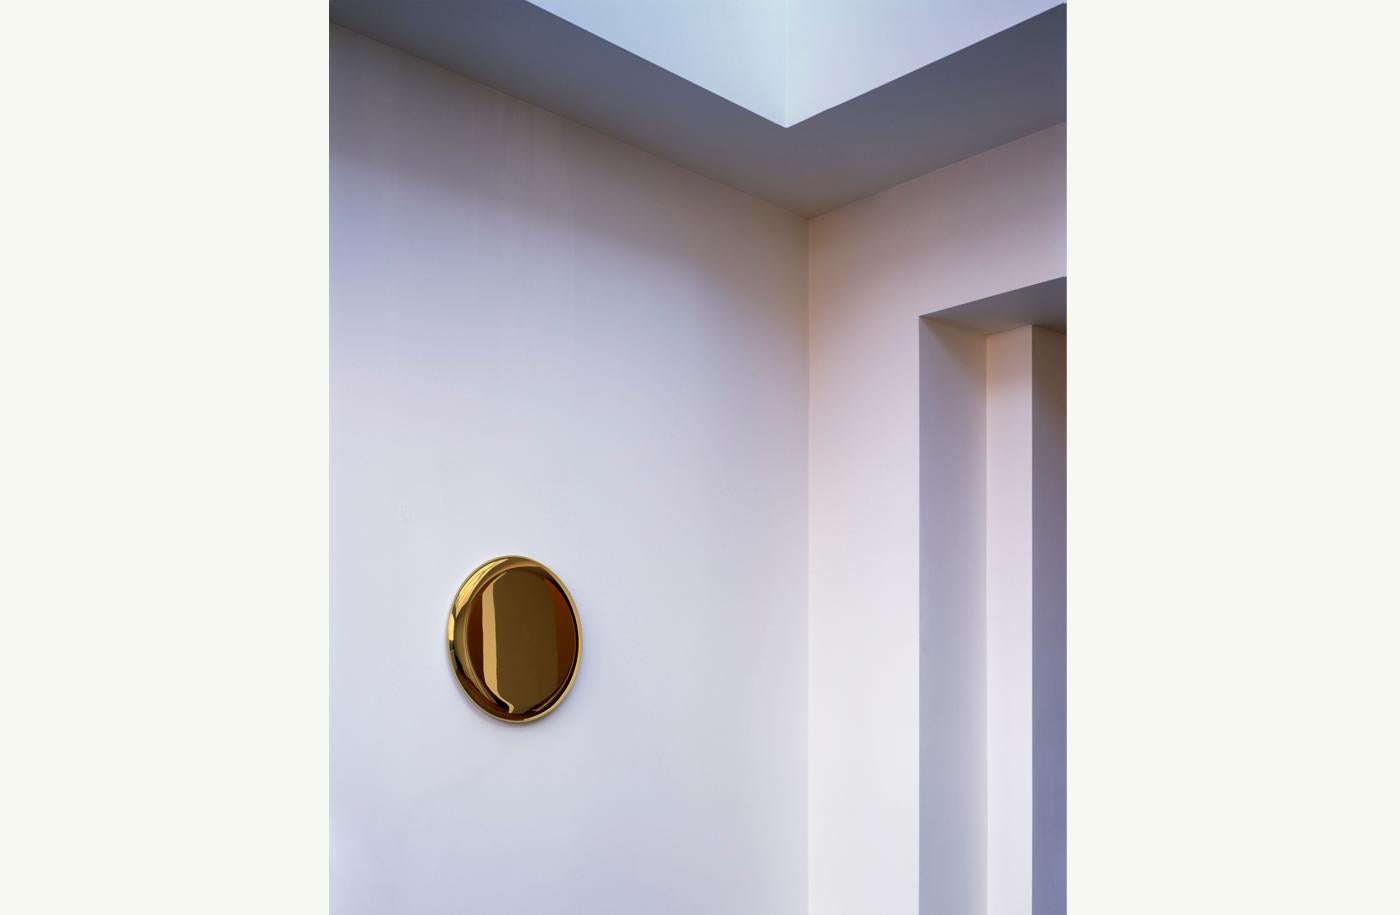 Der handgefertigte Beauty-Spiegel aus poliertem Messing ist ein besonderes Schmuckstück, das Sie an Ihre Wand hängen können. Mit seiner warmen Reflexion ist der Beauty-Spiegel ehrlich zu seinem MATERIAL, das ein wesentlicher Bestandteil der Arbeit